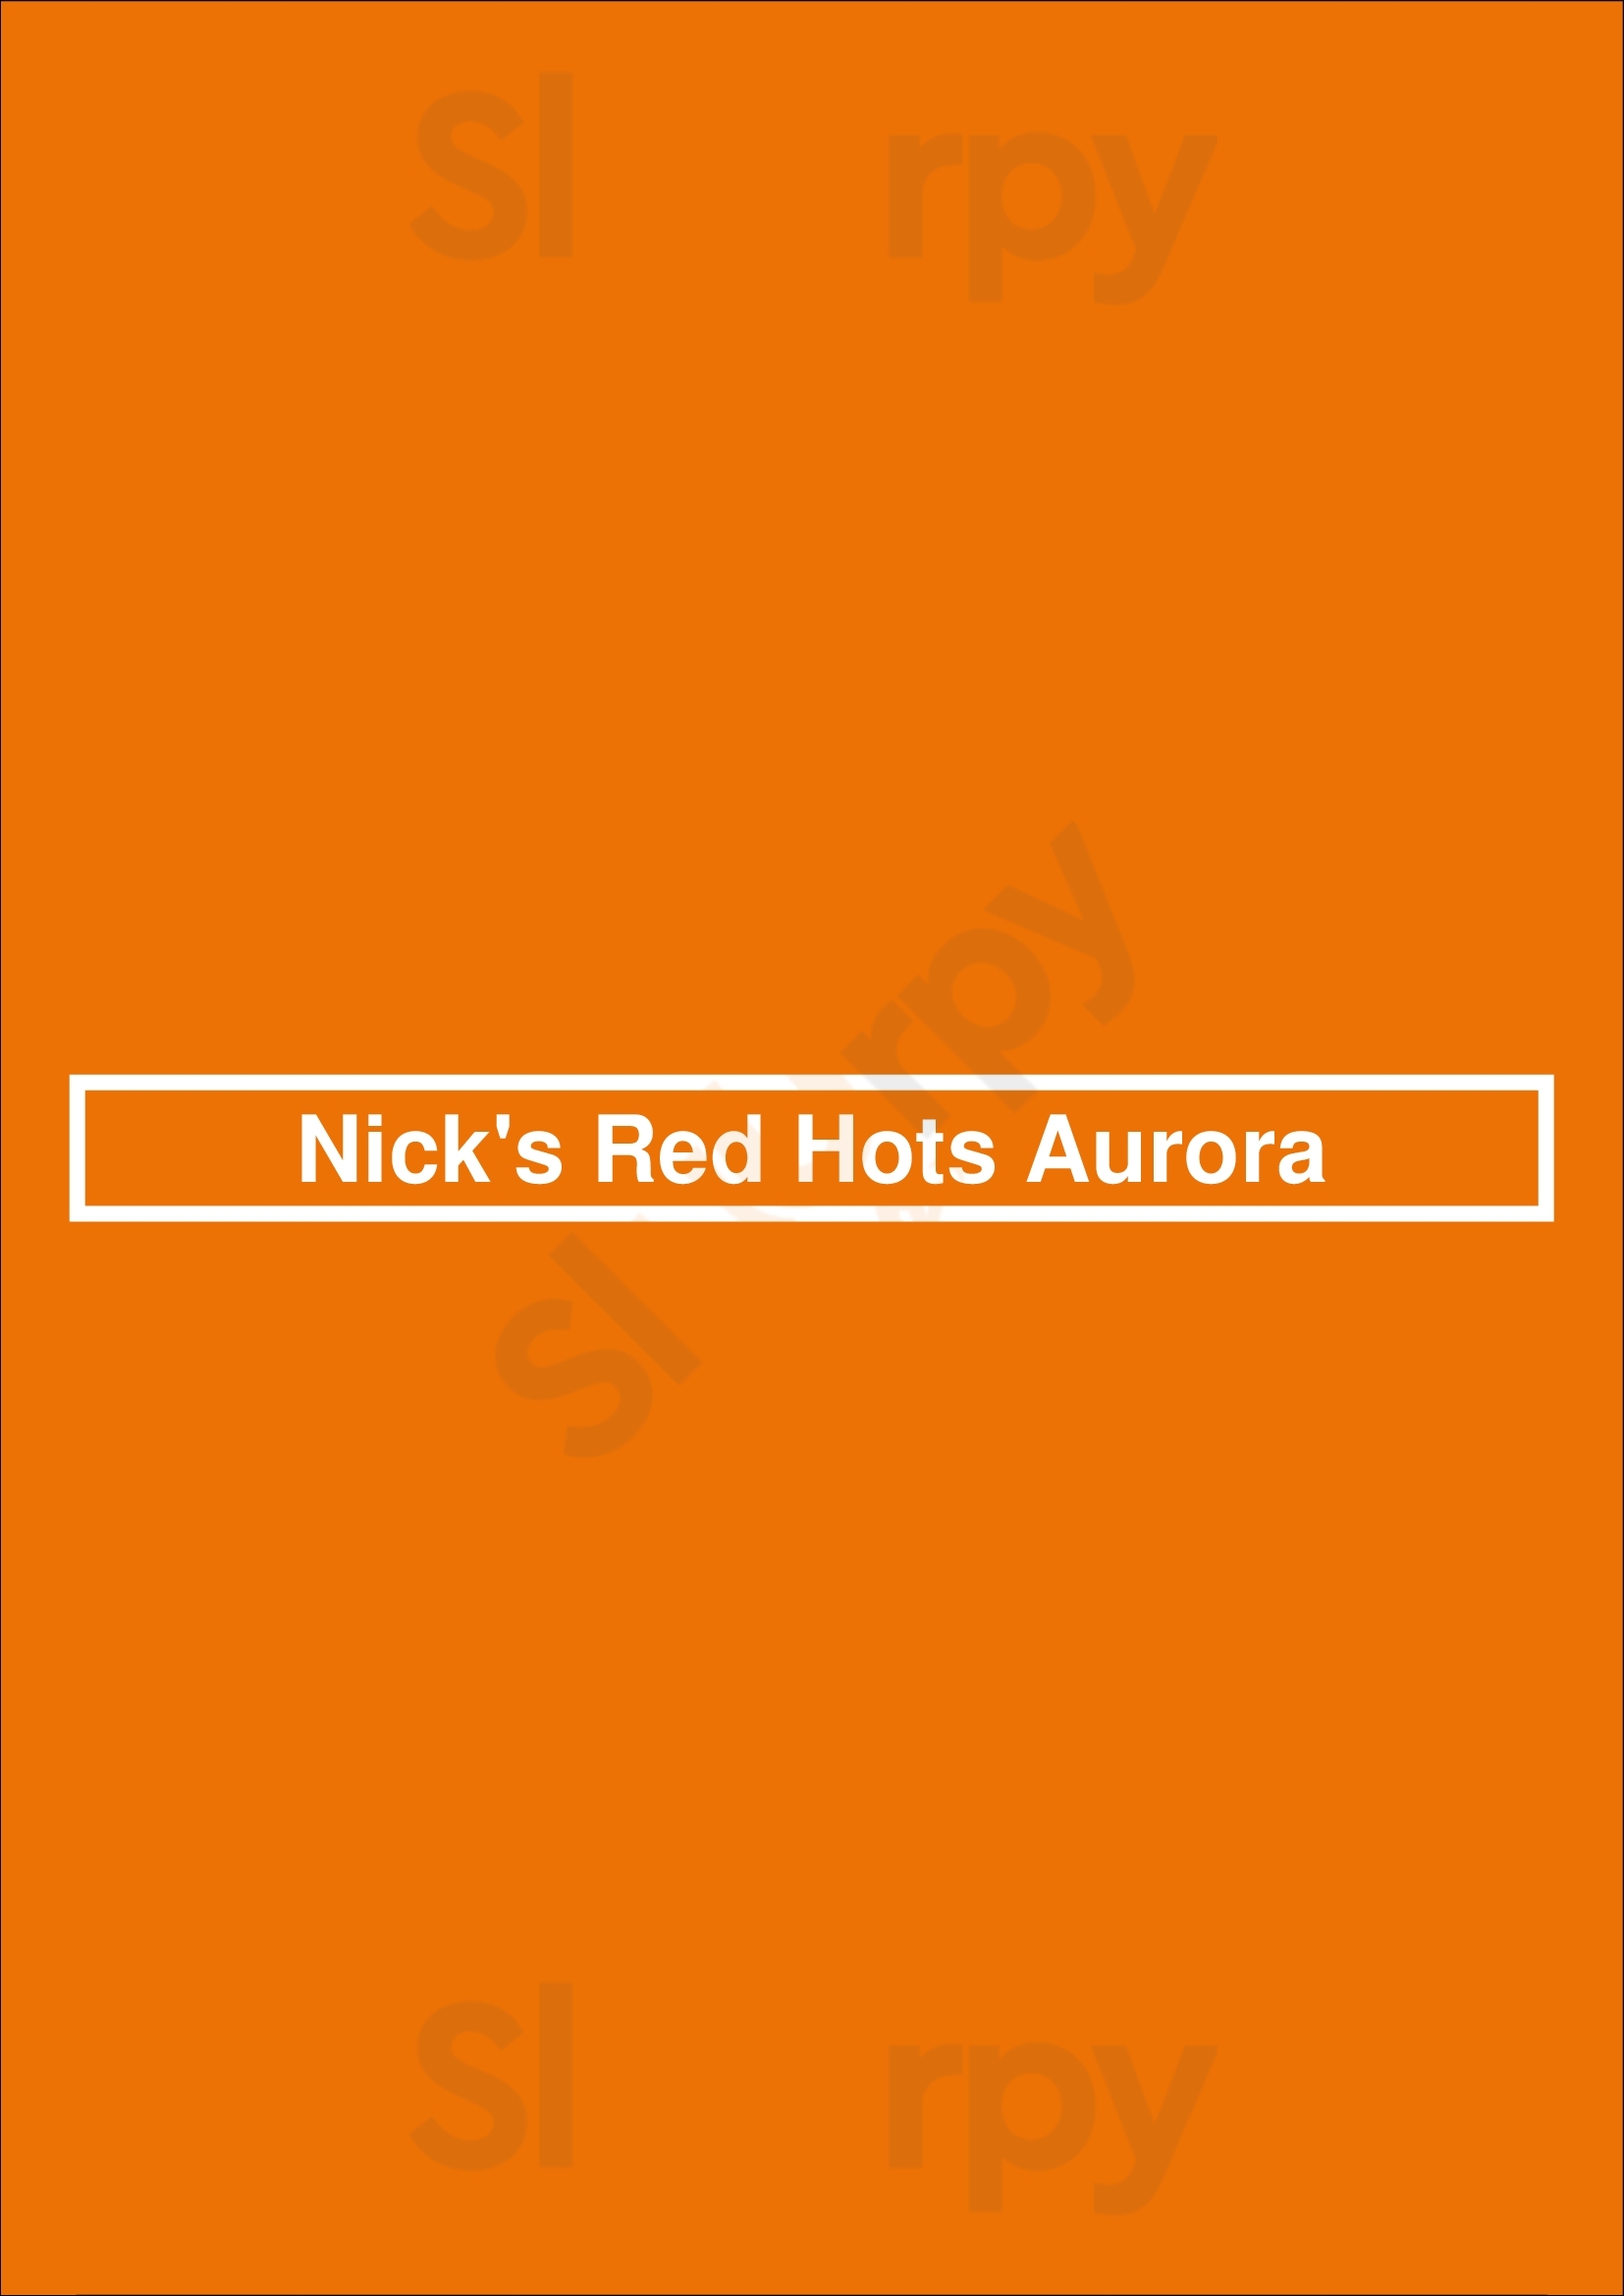 Nick's Red Hots Aurora Aurora Menu - 1